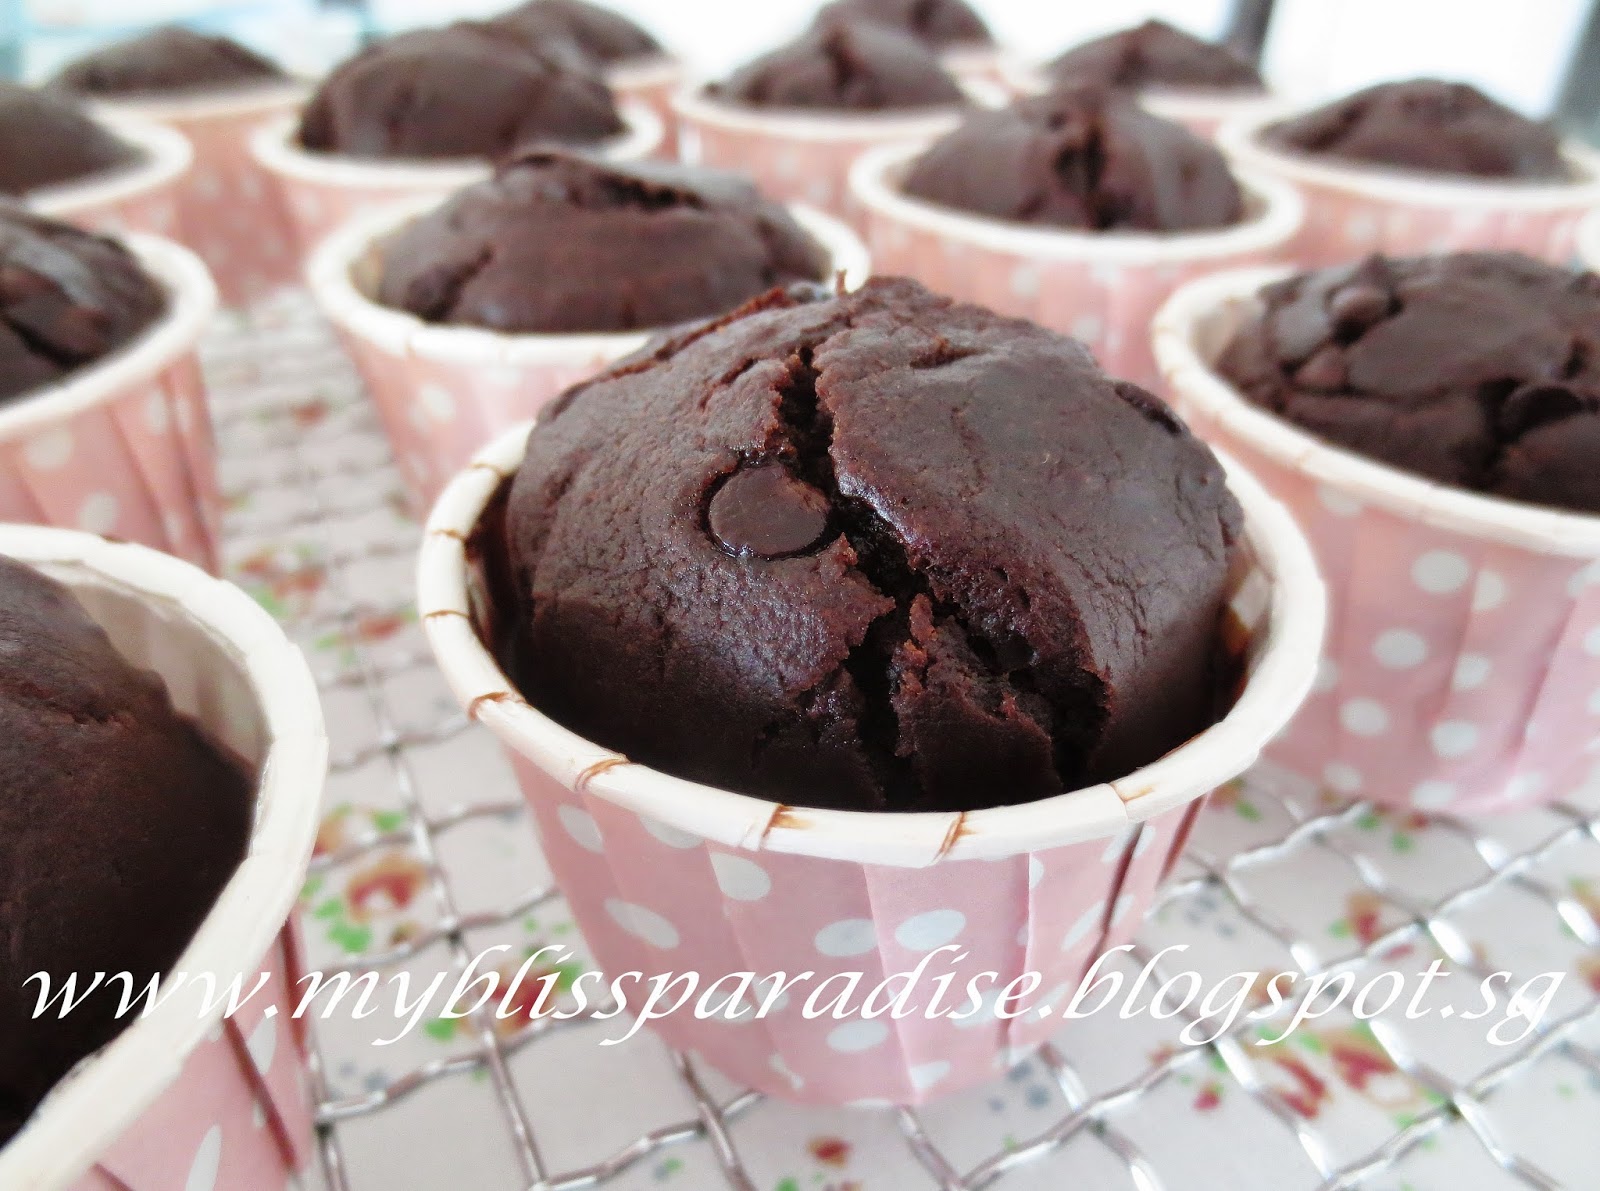 http://myblissparadise.blogspot.sg/2014/06/double-chocolate-cupcakes-18-mar-14.html